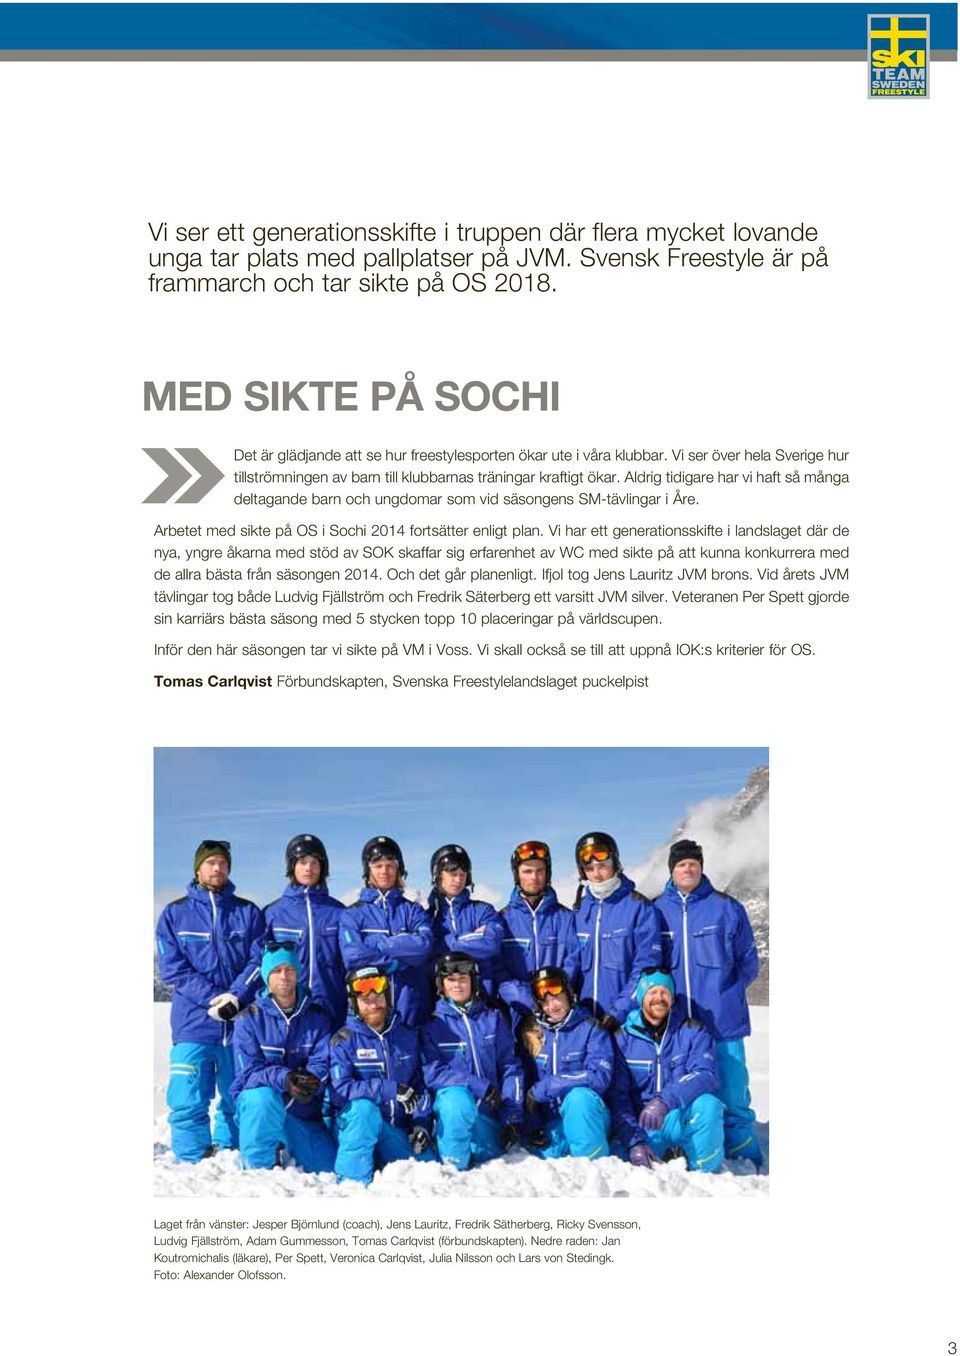 Aldrig tidigare har vi haft så många deltagande barn och ungdomar som vid säsongens SM-tävlingar i Åre. Arbetet med sikte på OS i Sochi 2014 fortsätter enligt plan.